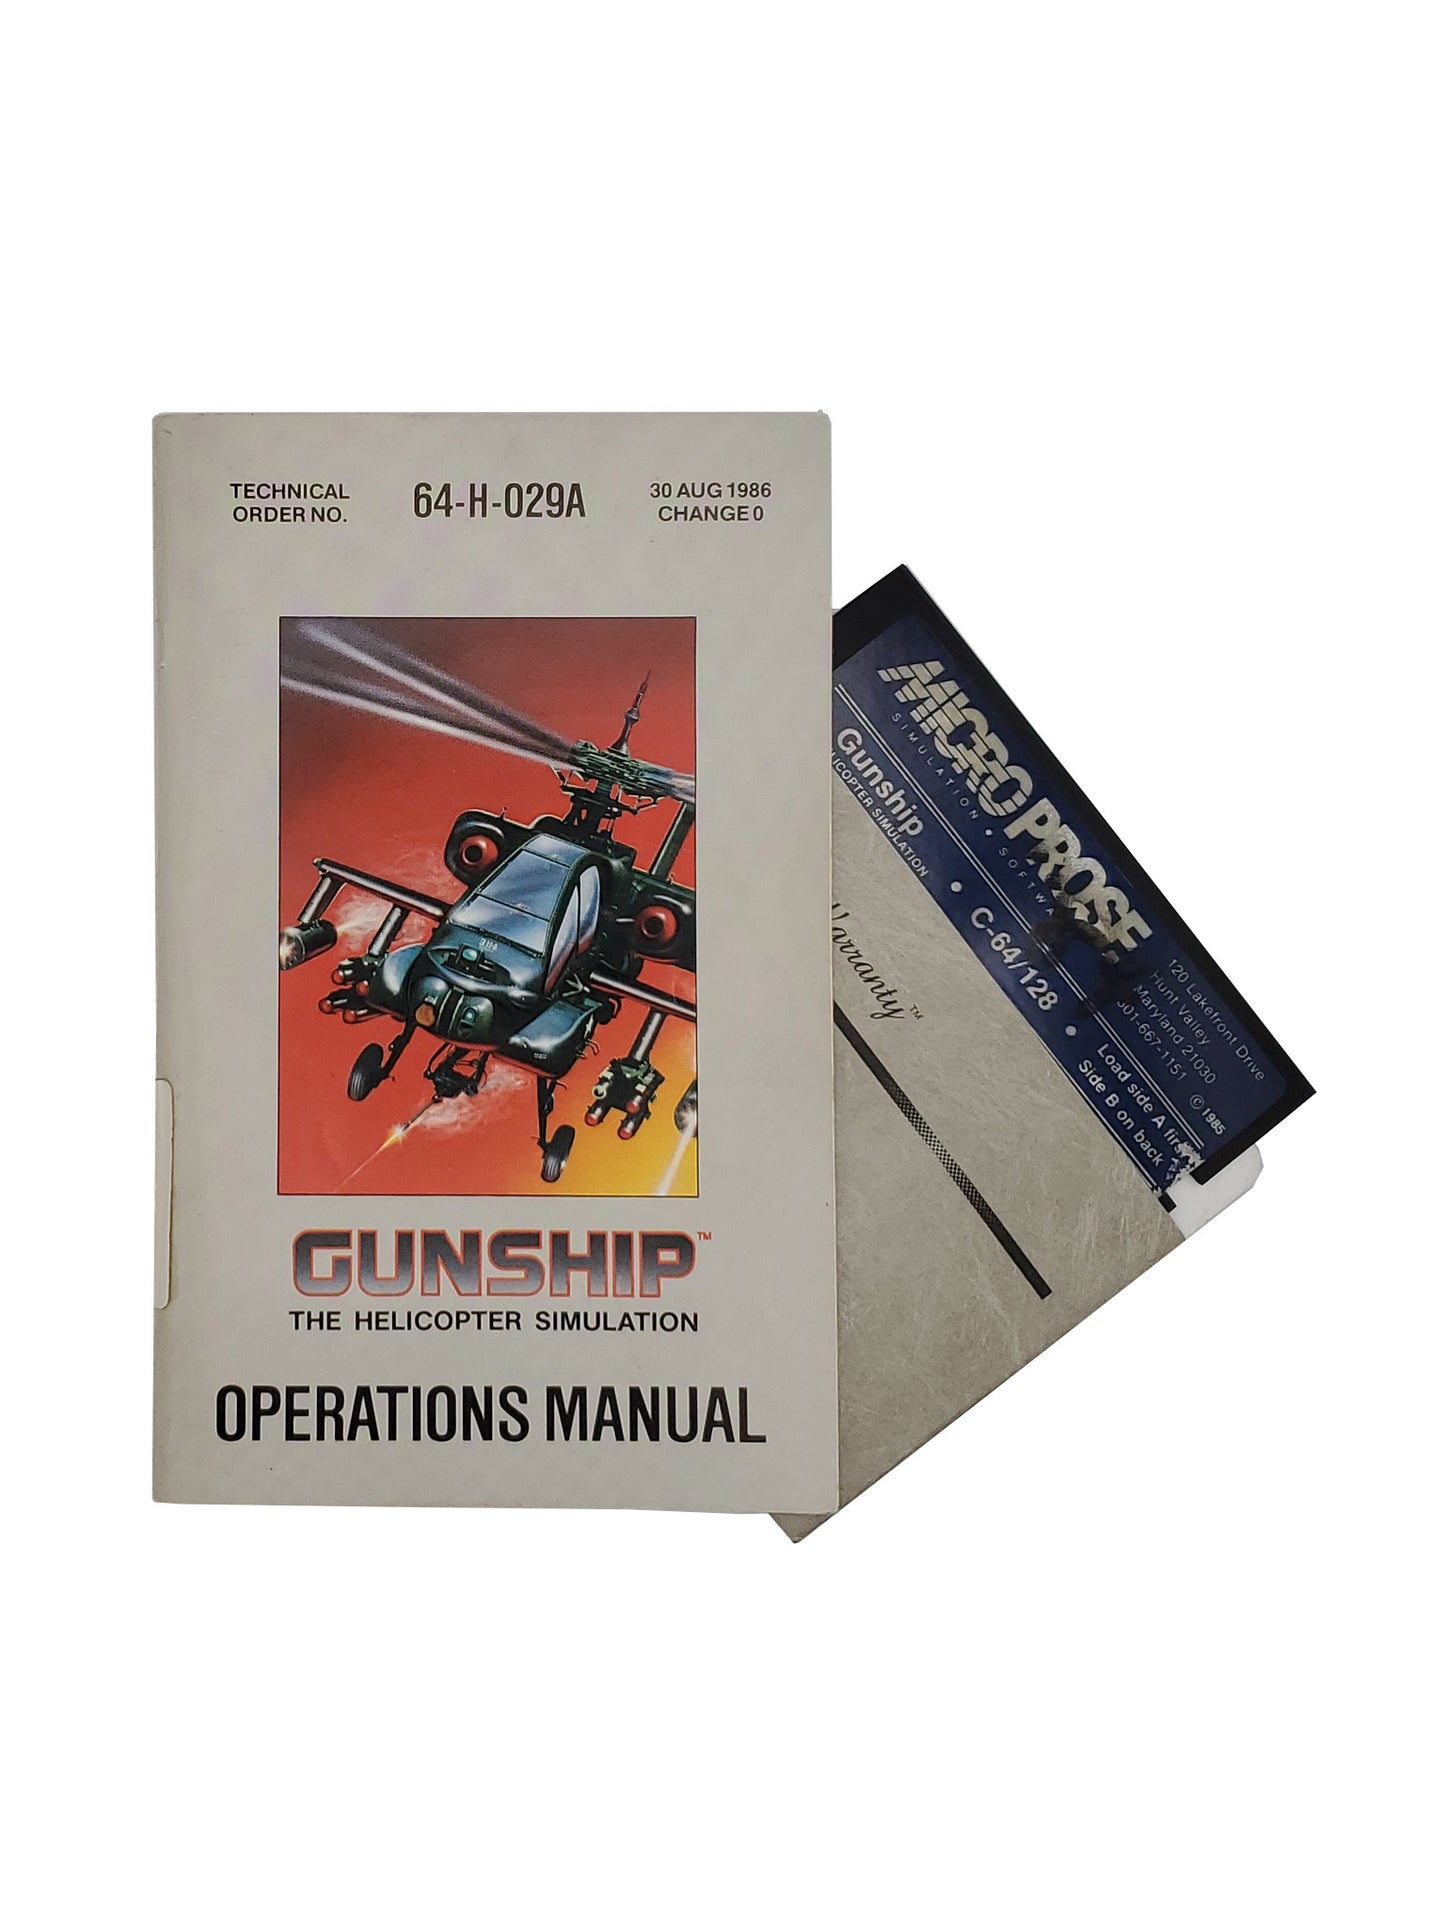 Gunship Manual and Bad Disk